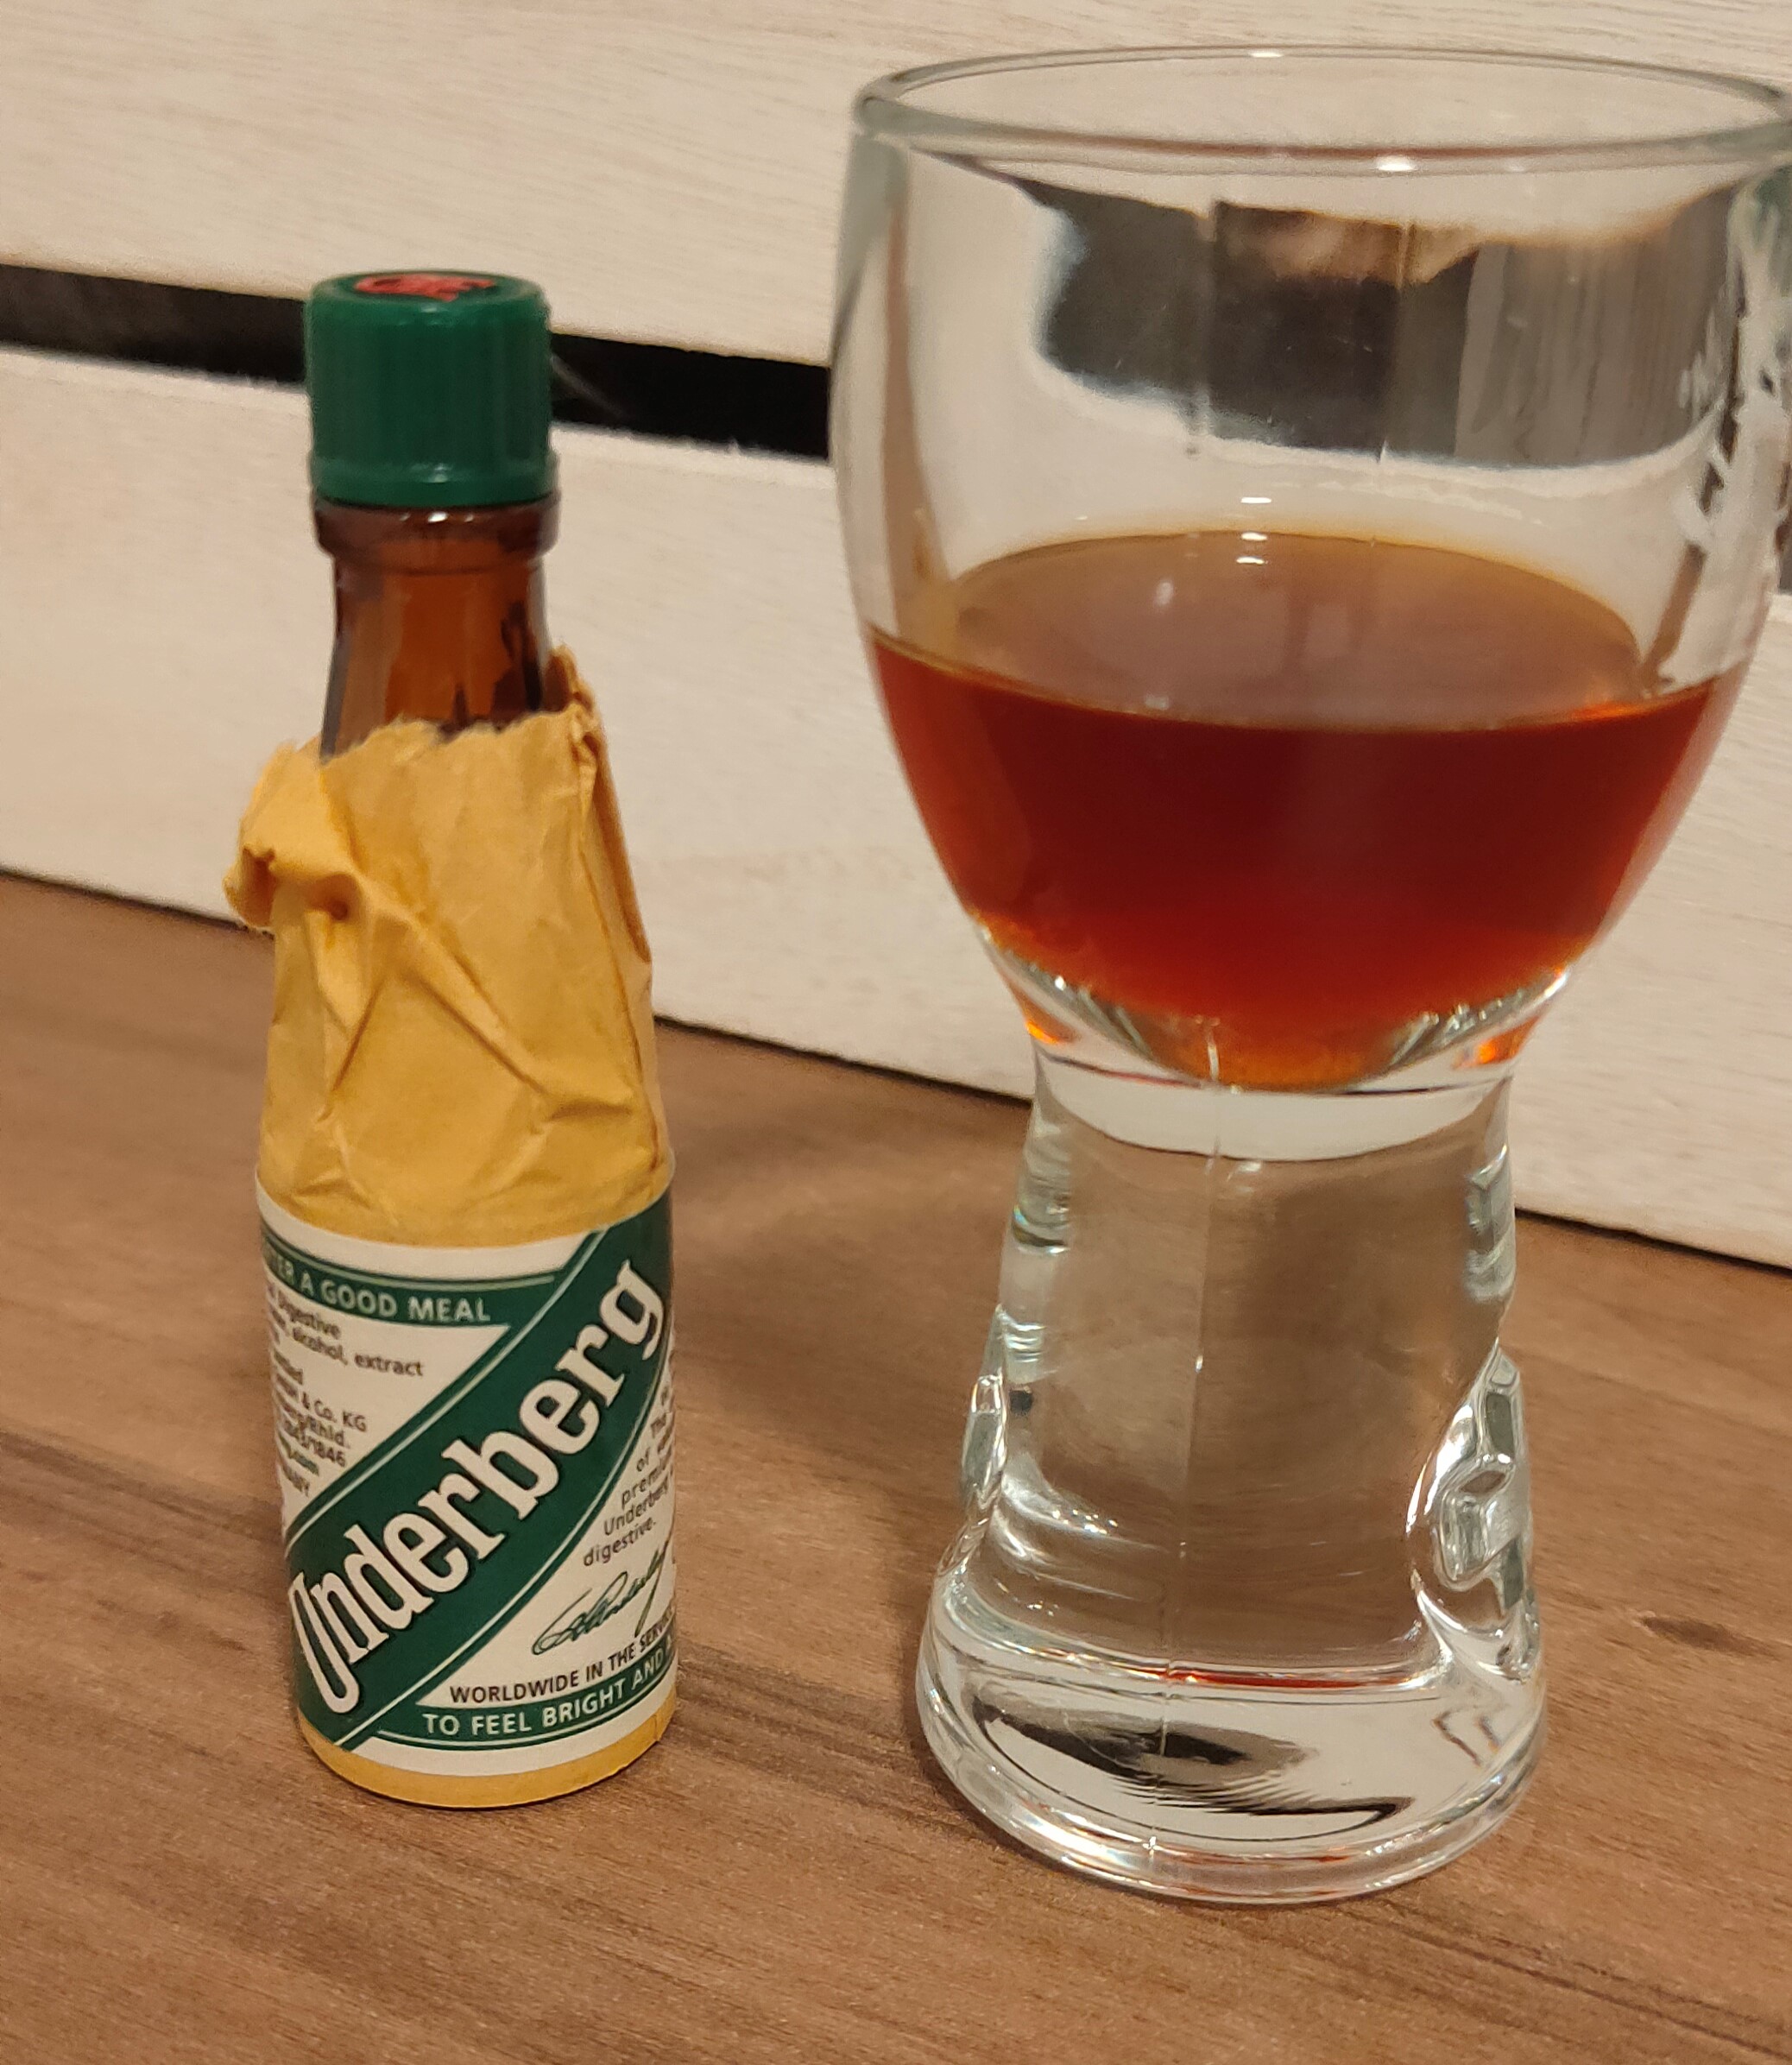 Una bottiglietta di Underberg ed un bicchierino con l'amaro